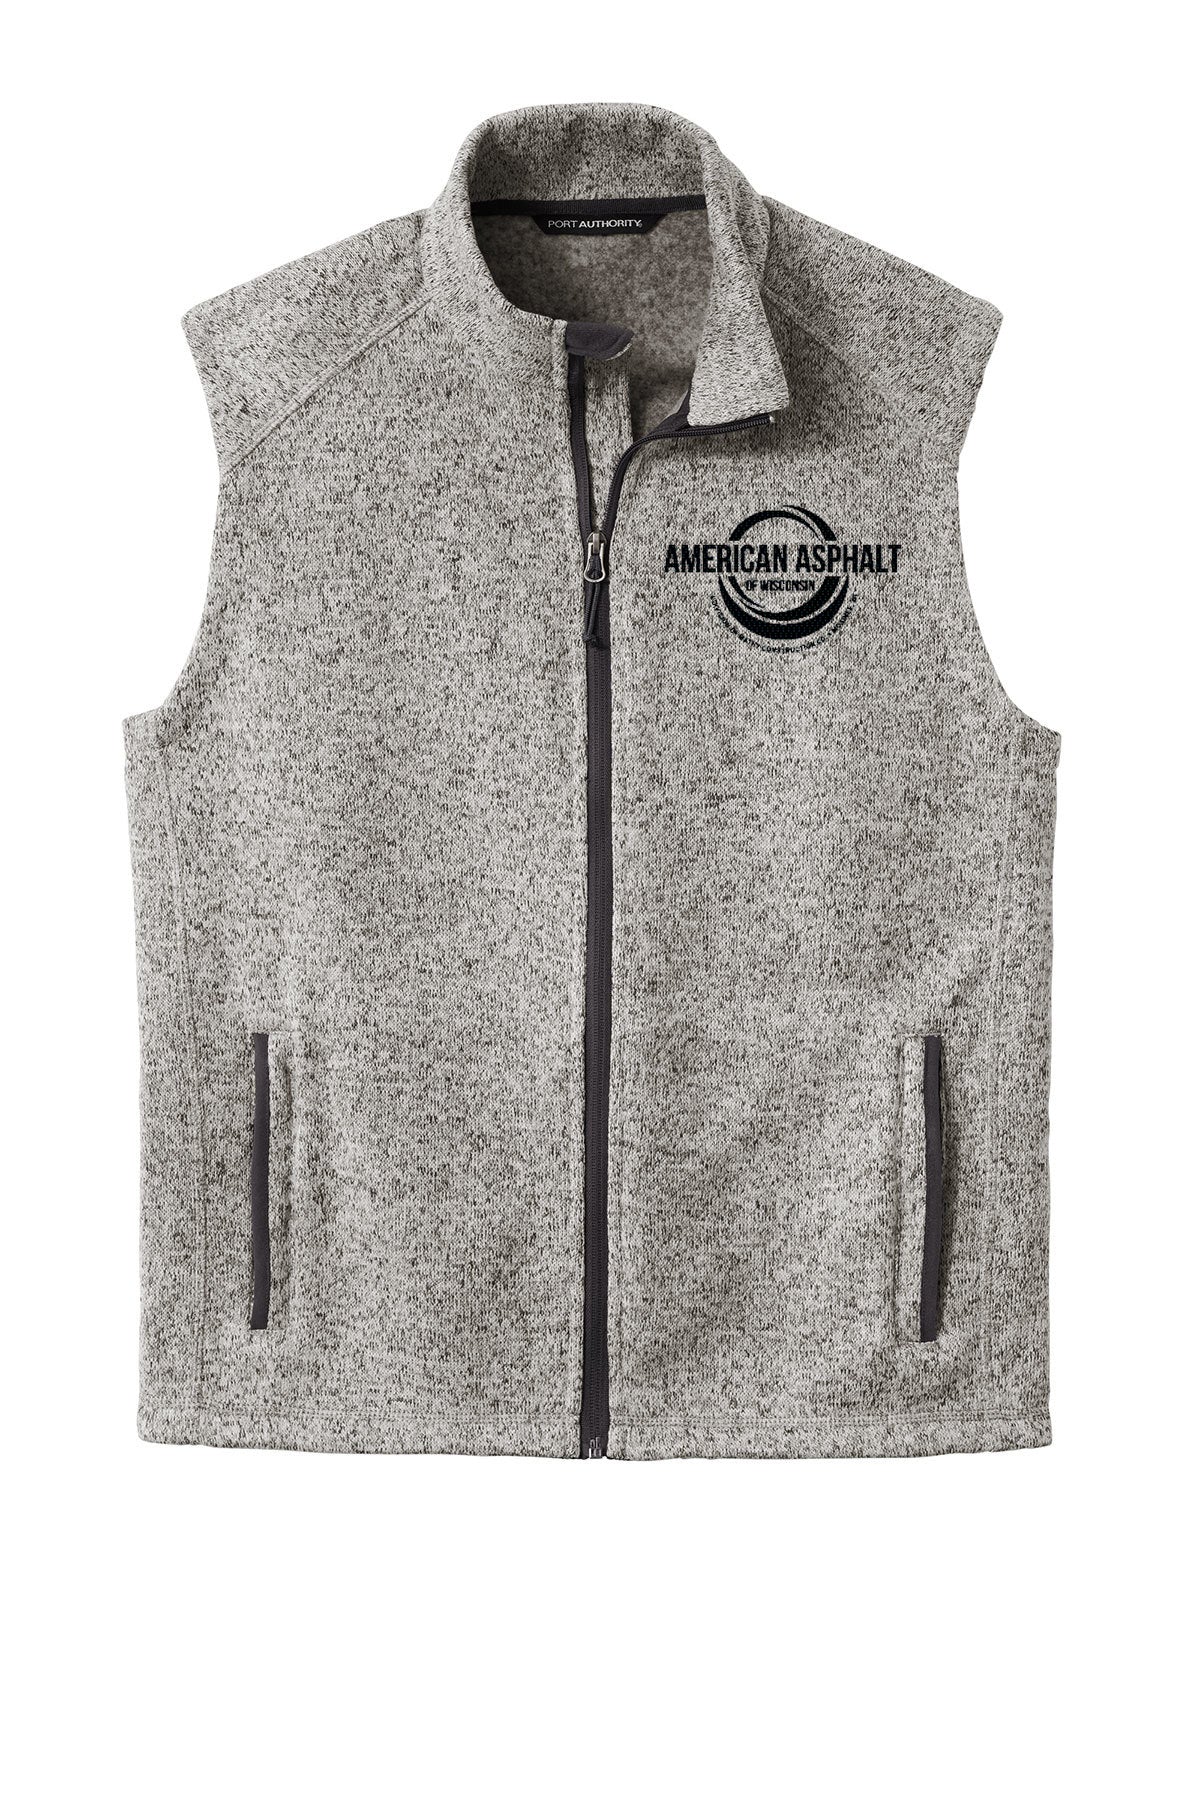 American Asphalt of Wisconsin Sweater Fleece Vest